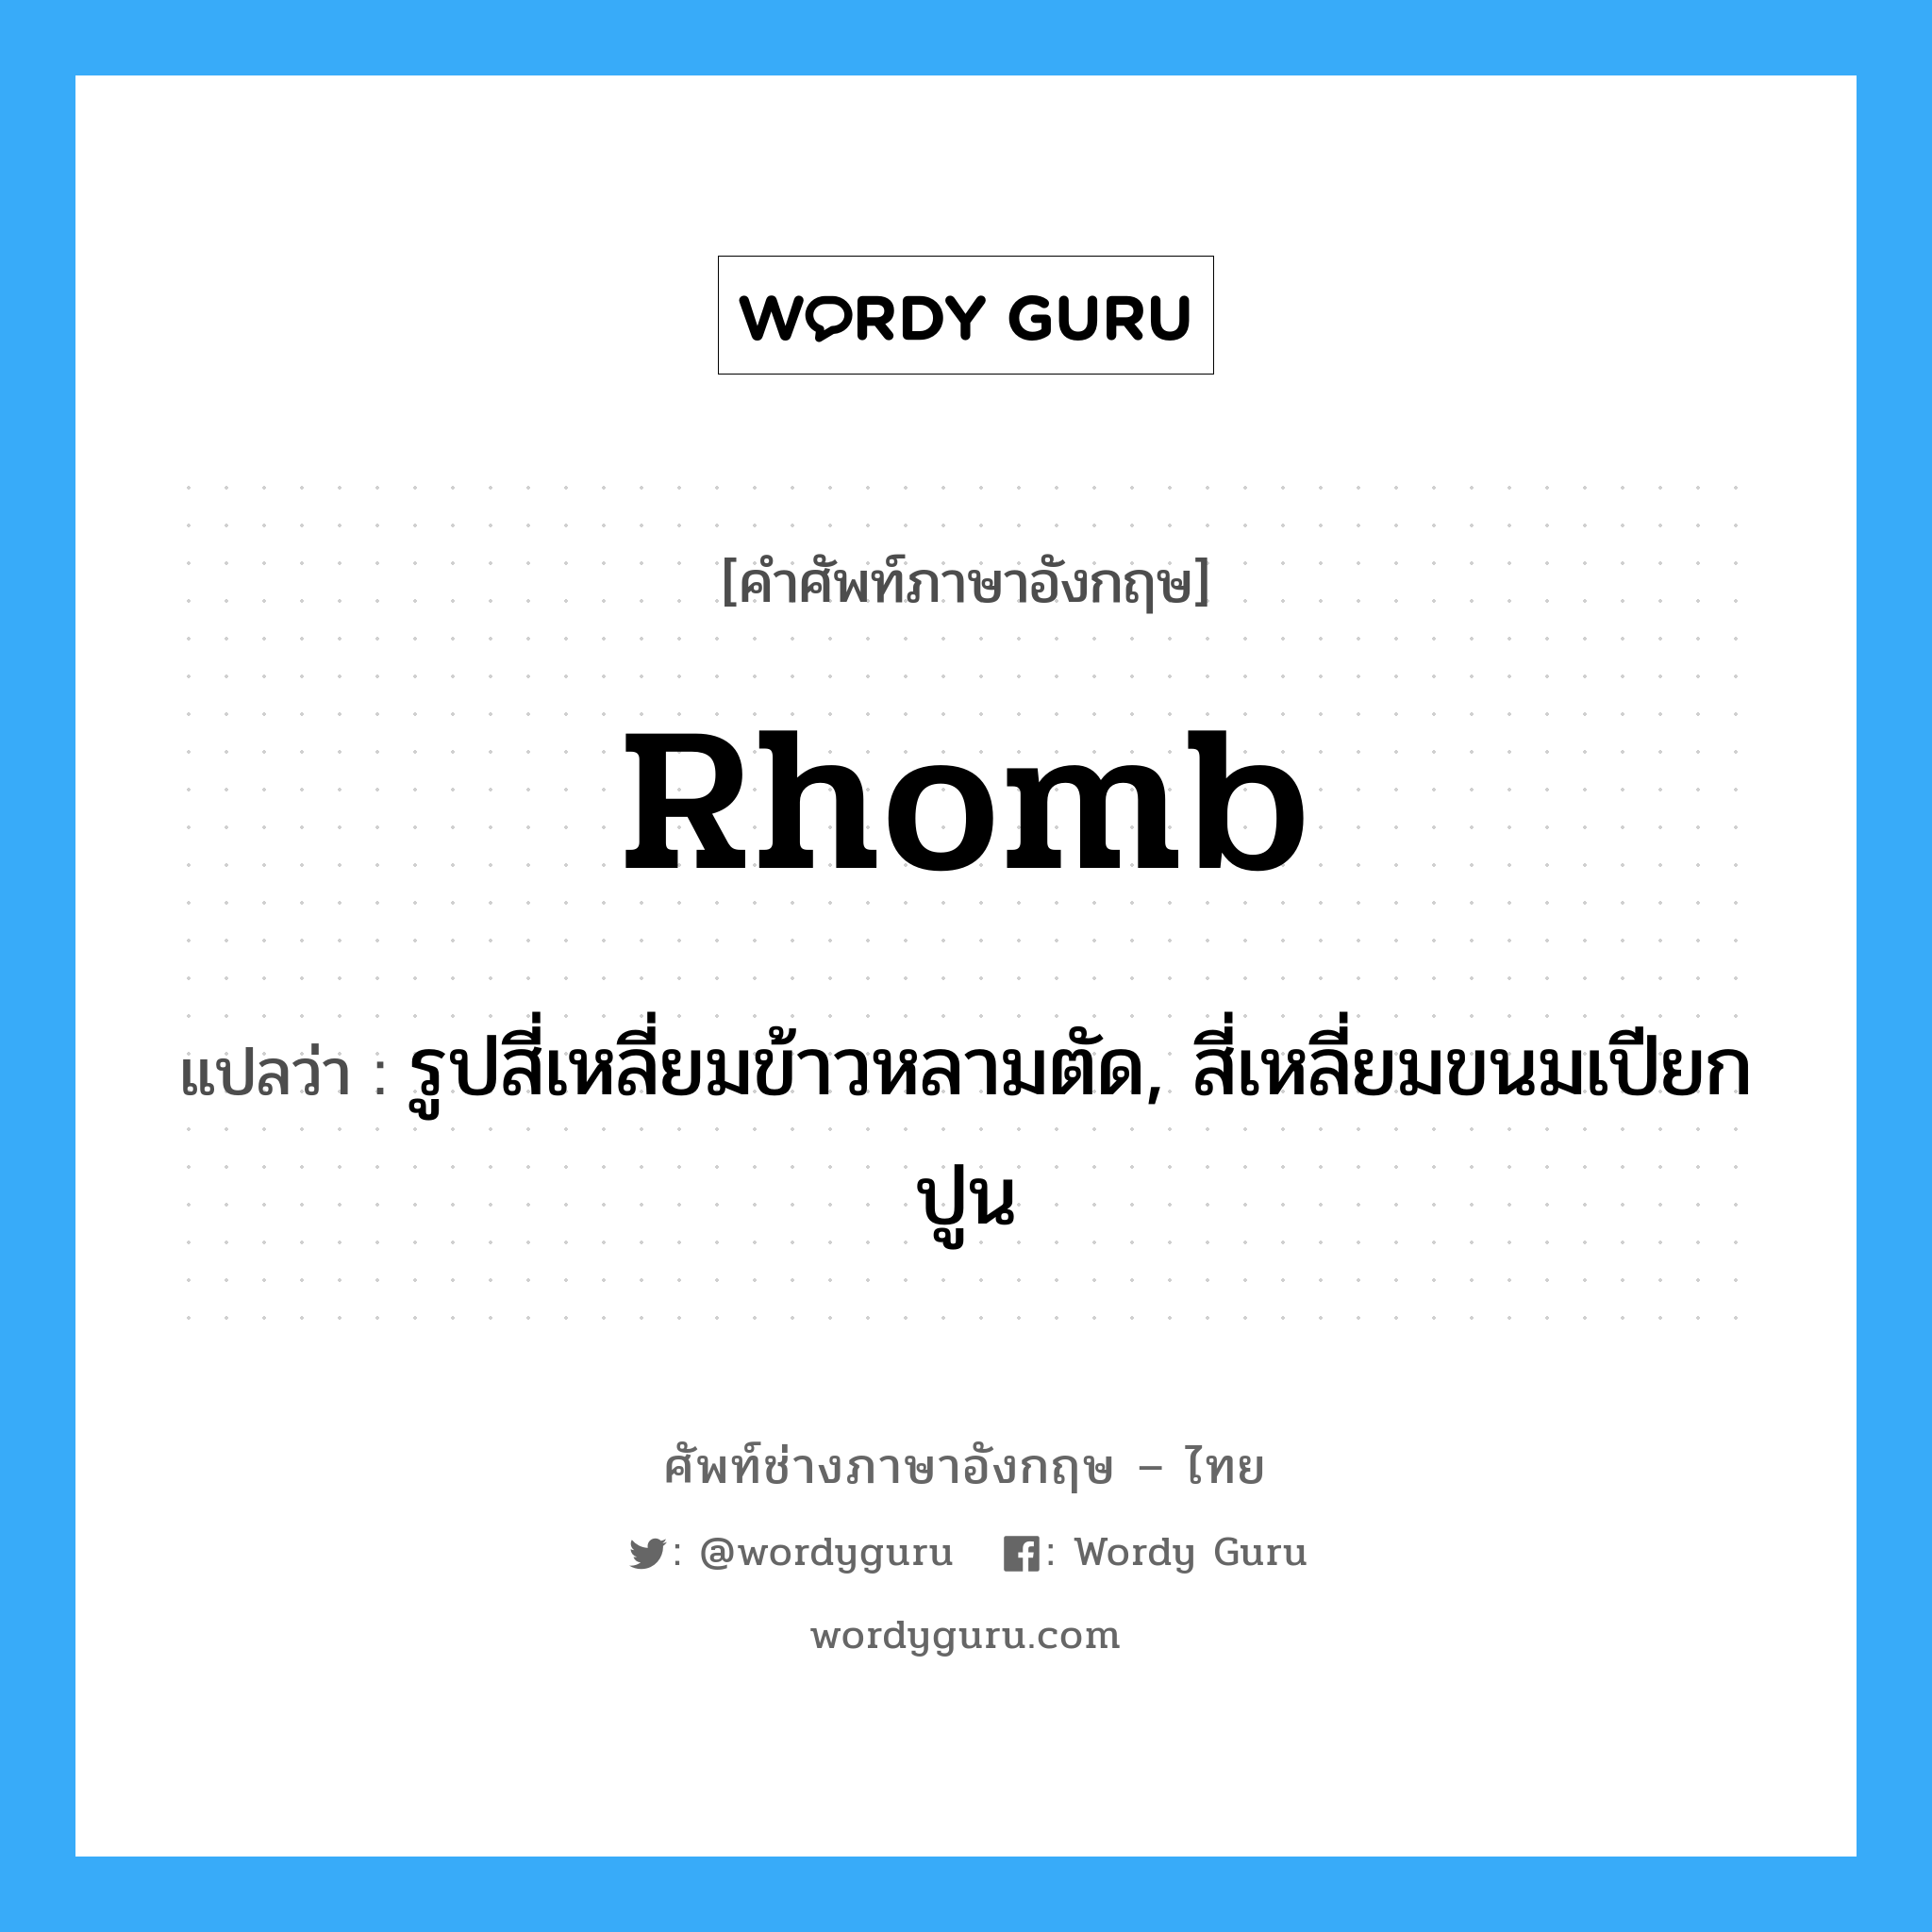 rhomb แปลว่า?, คำศัพท์ช่างภาษาอังกฤษ - ไทย rhomb คำศัพท์ภาษาอังกฤษ rhomb แปลว่า รูปสี่เหลี่ยมข้าวหลามตัด, สี่เหลี่ยมขนมเปียกปูน